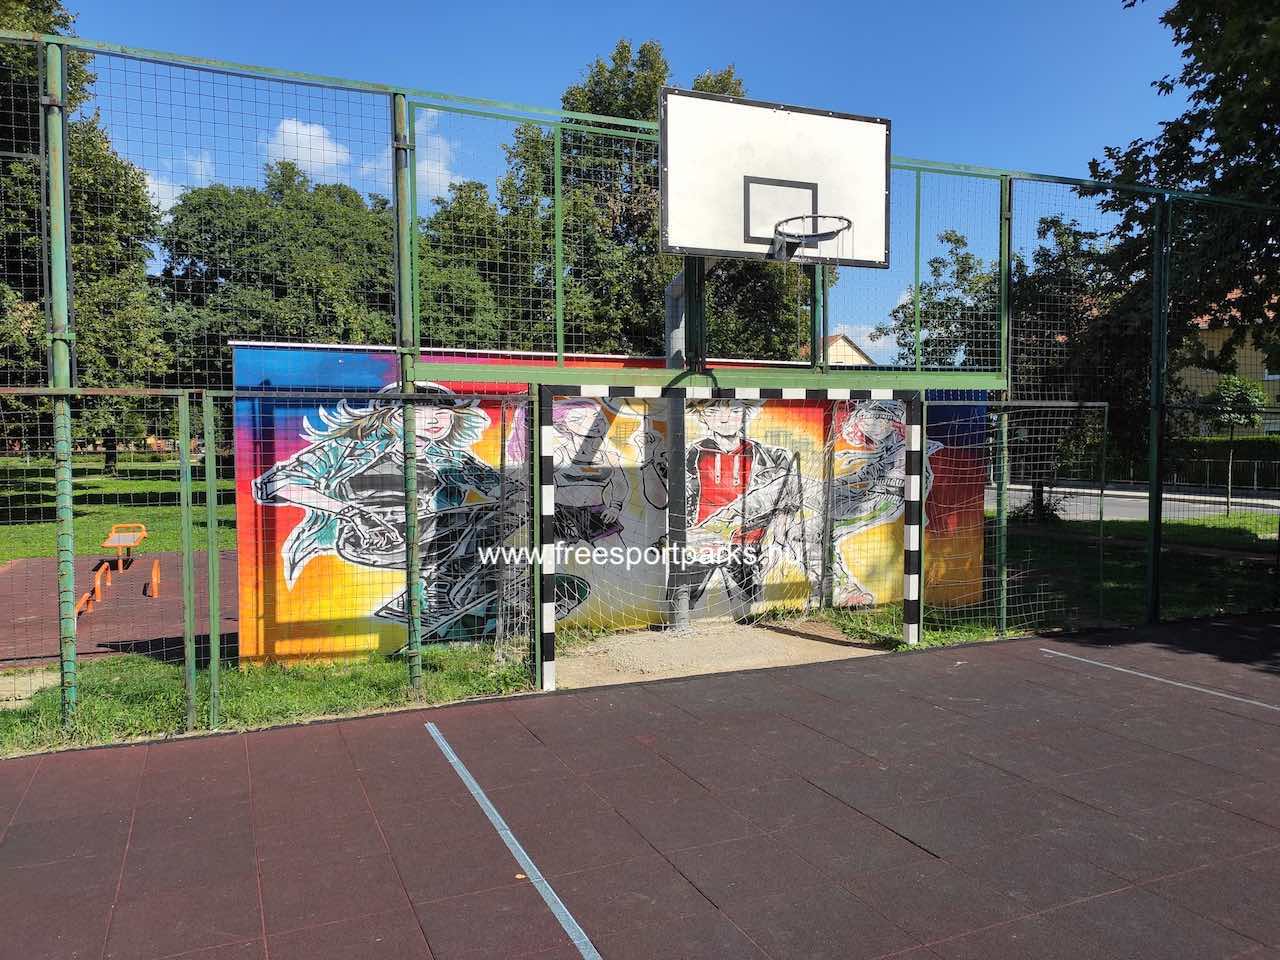 hálós focikapu és láncos kosárlabdapalánk - Vizslapark Zalaegerszeg - Free Sport Parks térkép